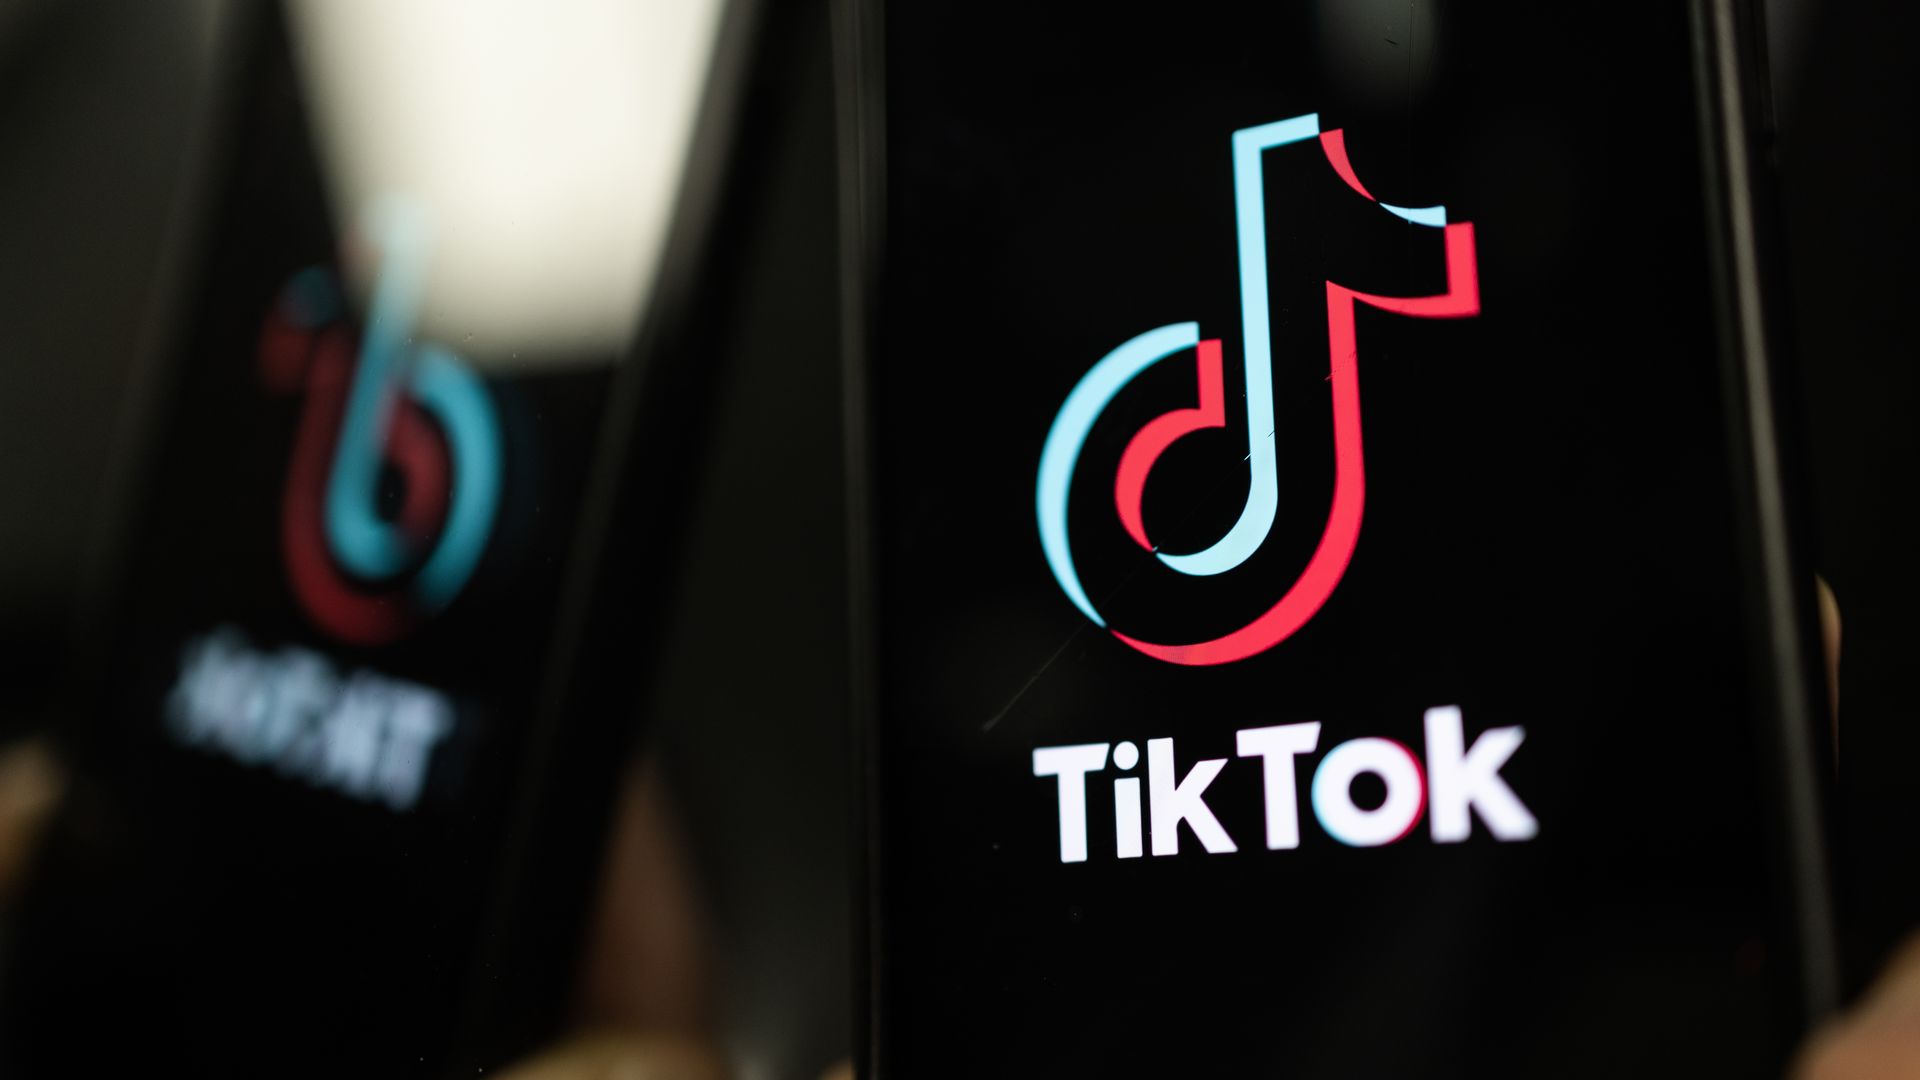 Photo illustration of TikTok logo on an iPhone